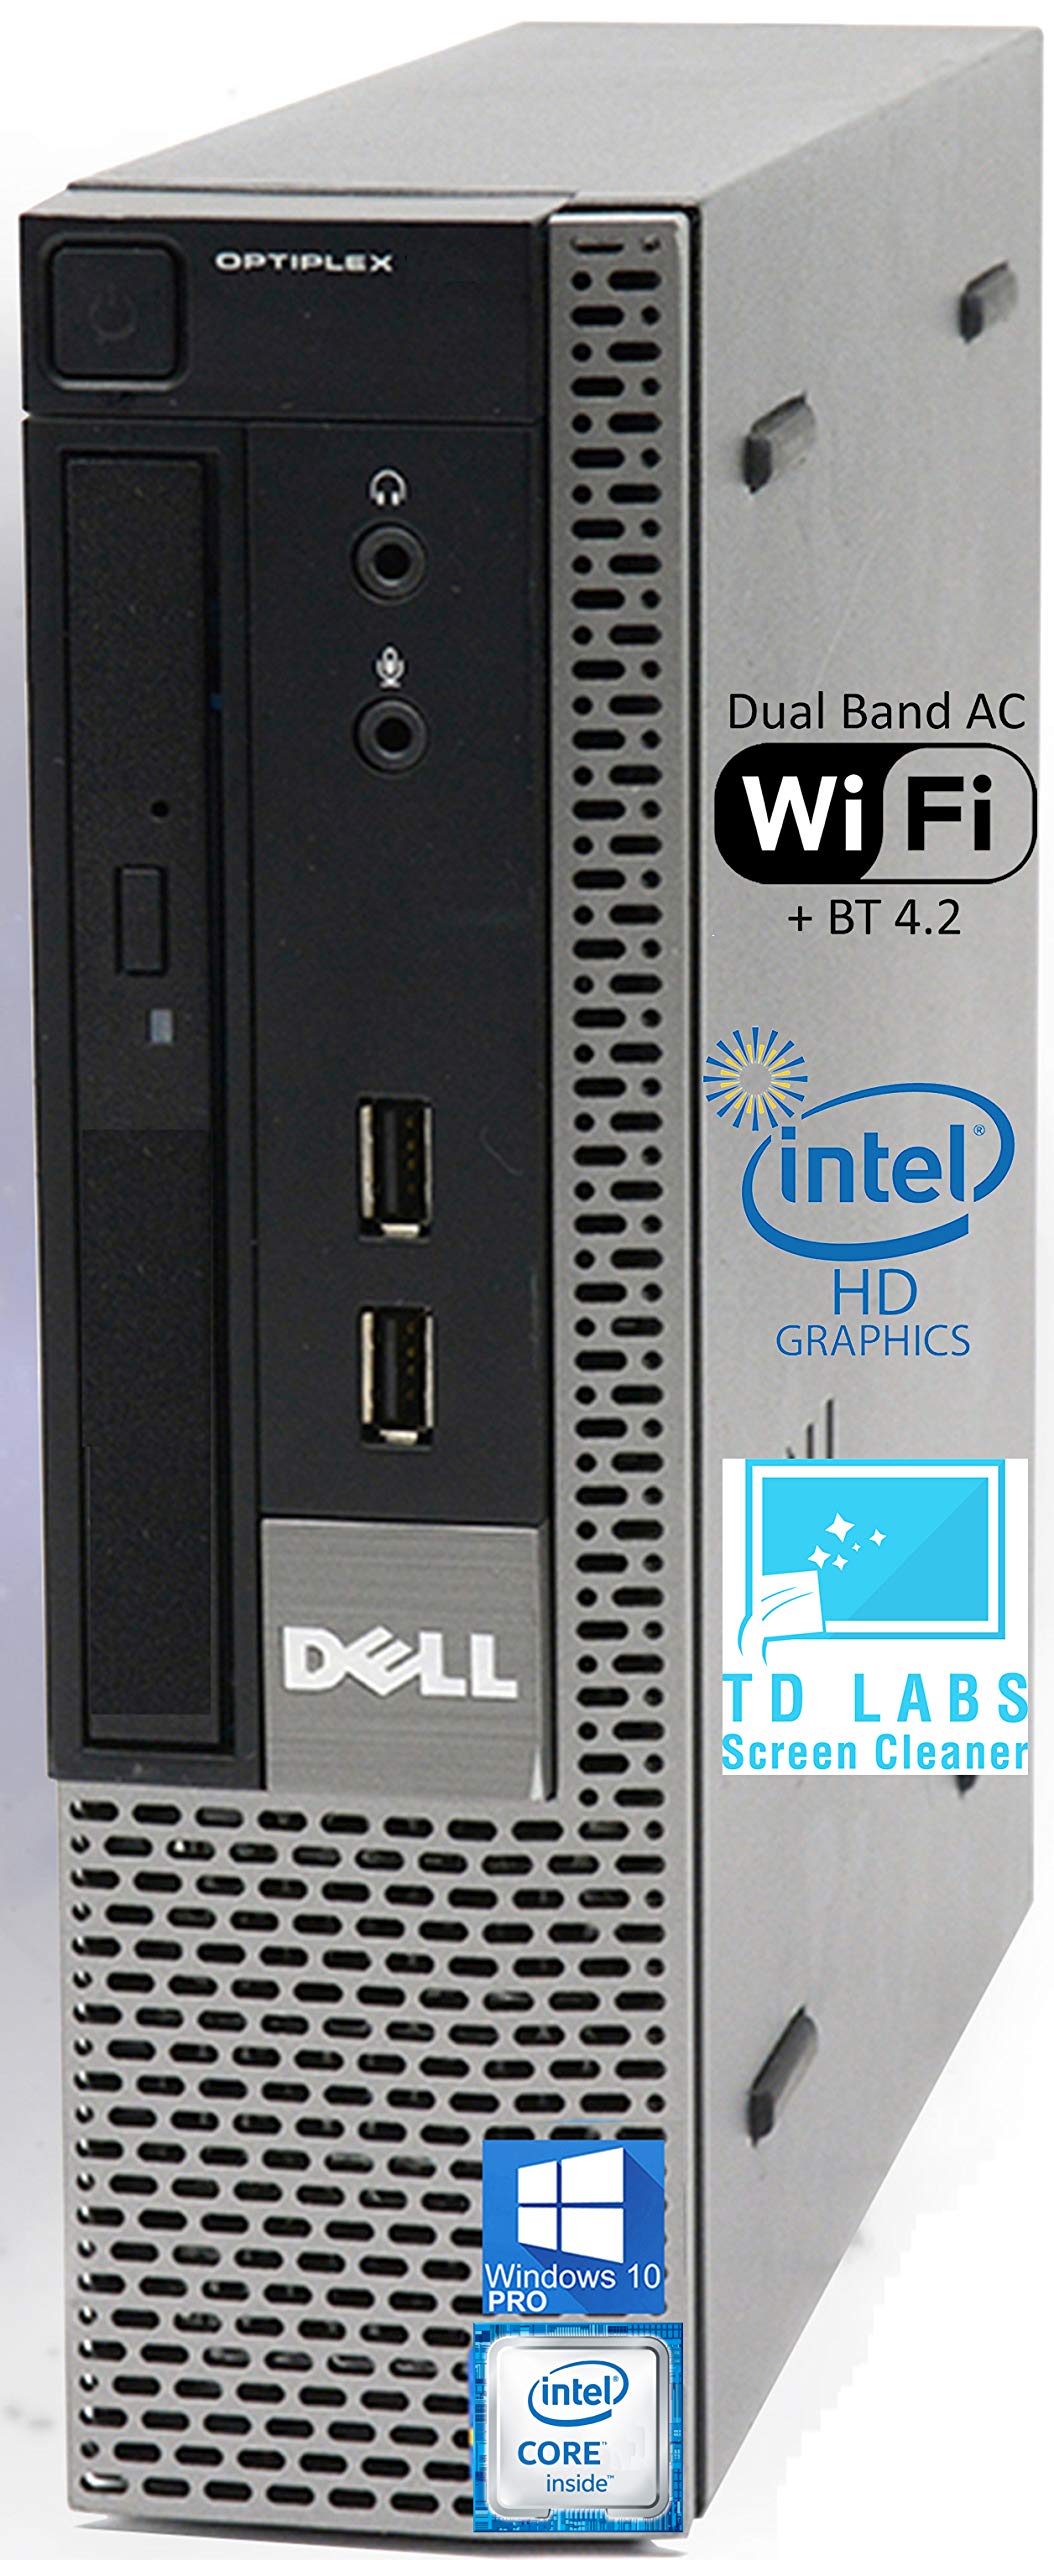 Dell Optiplex 7010 USFF Desktop Computer with Intel i5-3470S Upto 3.6GHz, HD Graphics 2500 4K Support, 16GB RAM, 1TB SSD, DisplayPort, HDMI, DVD, AC Wi-Fi, Bluetooth - Windows 10 Pro (Renewed)